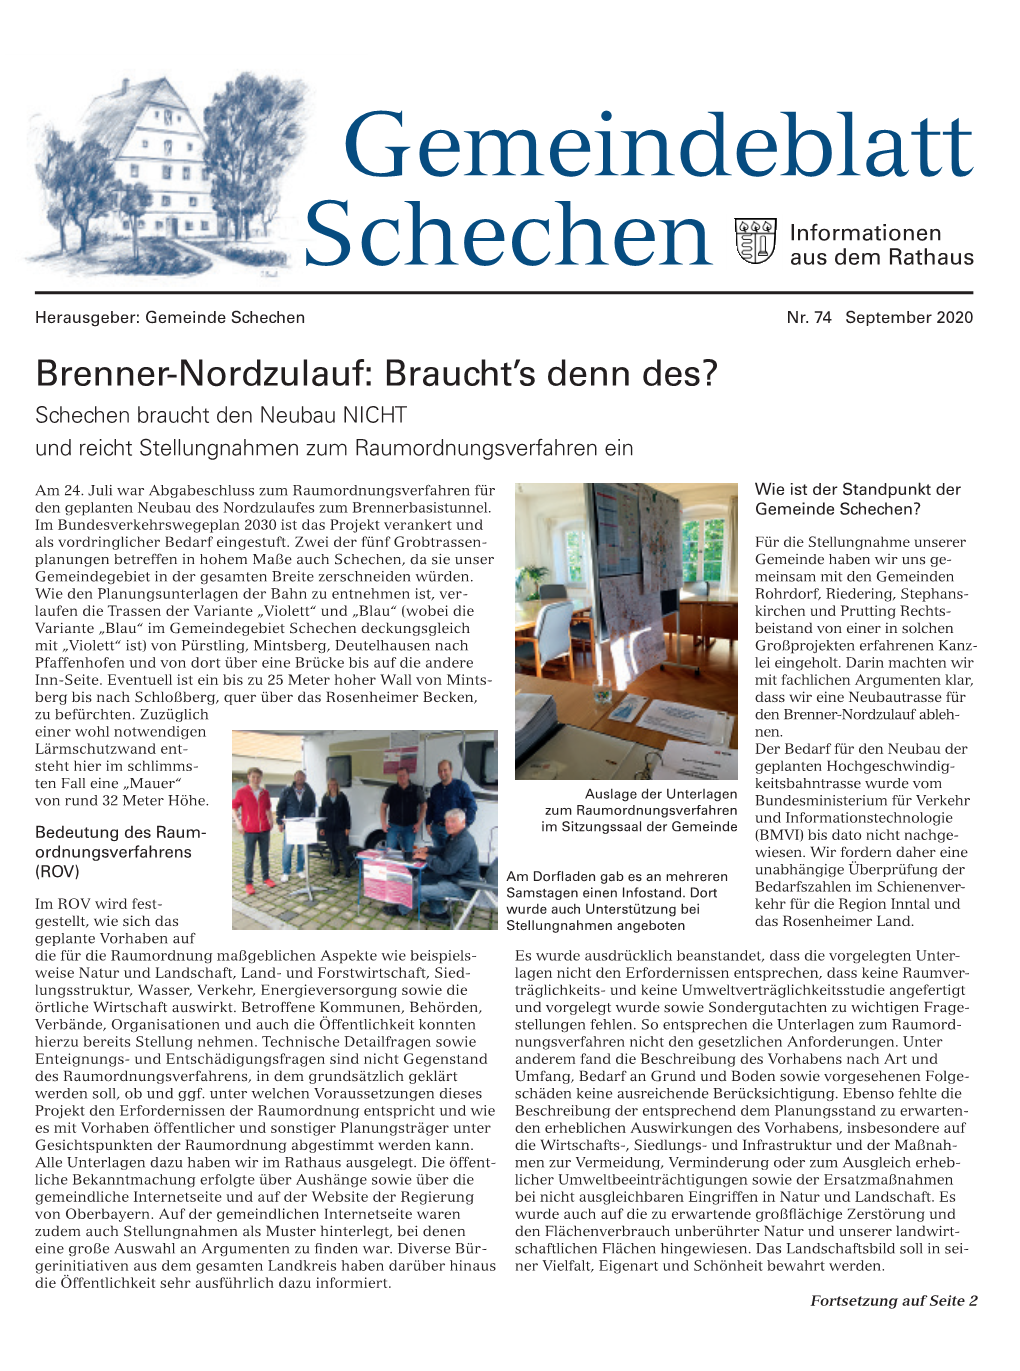 Gemeindeblatt-September-2020.Pdf